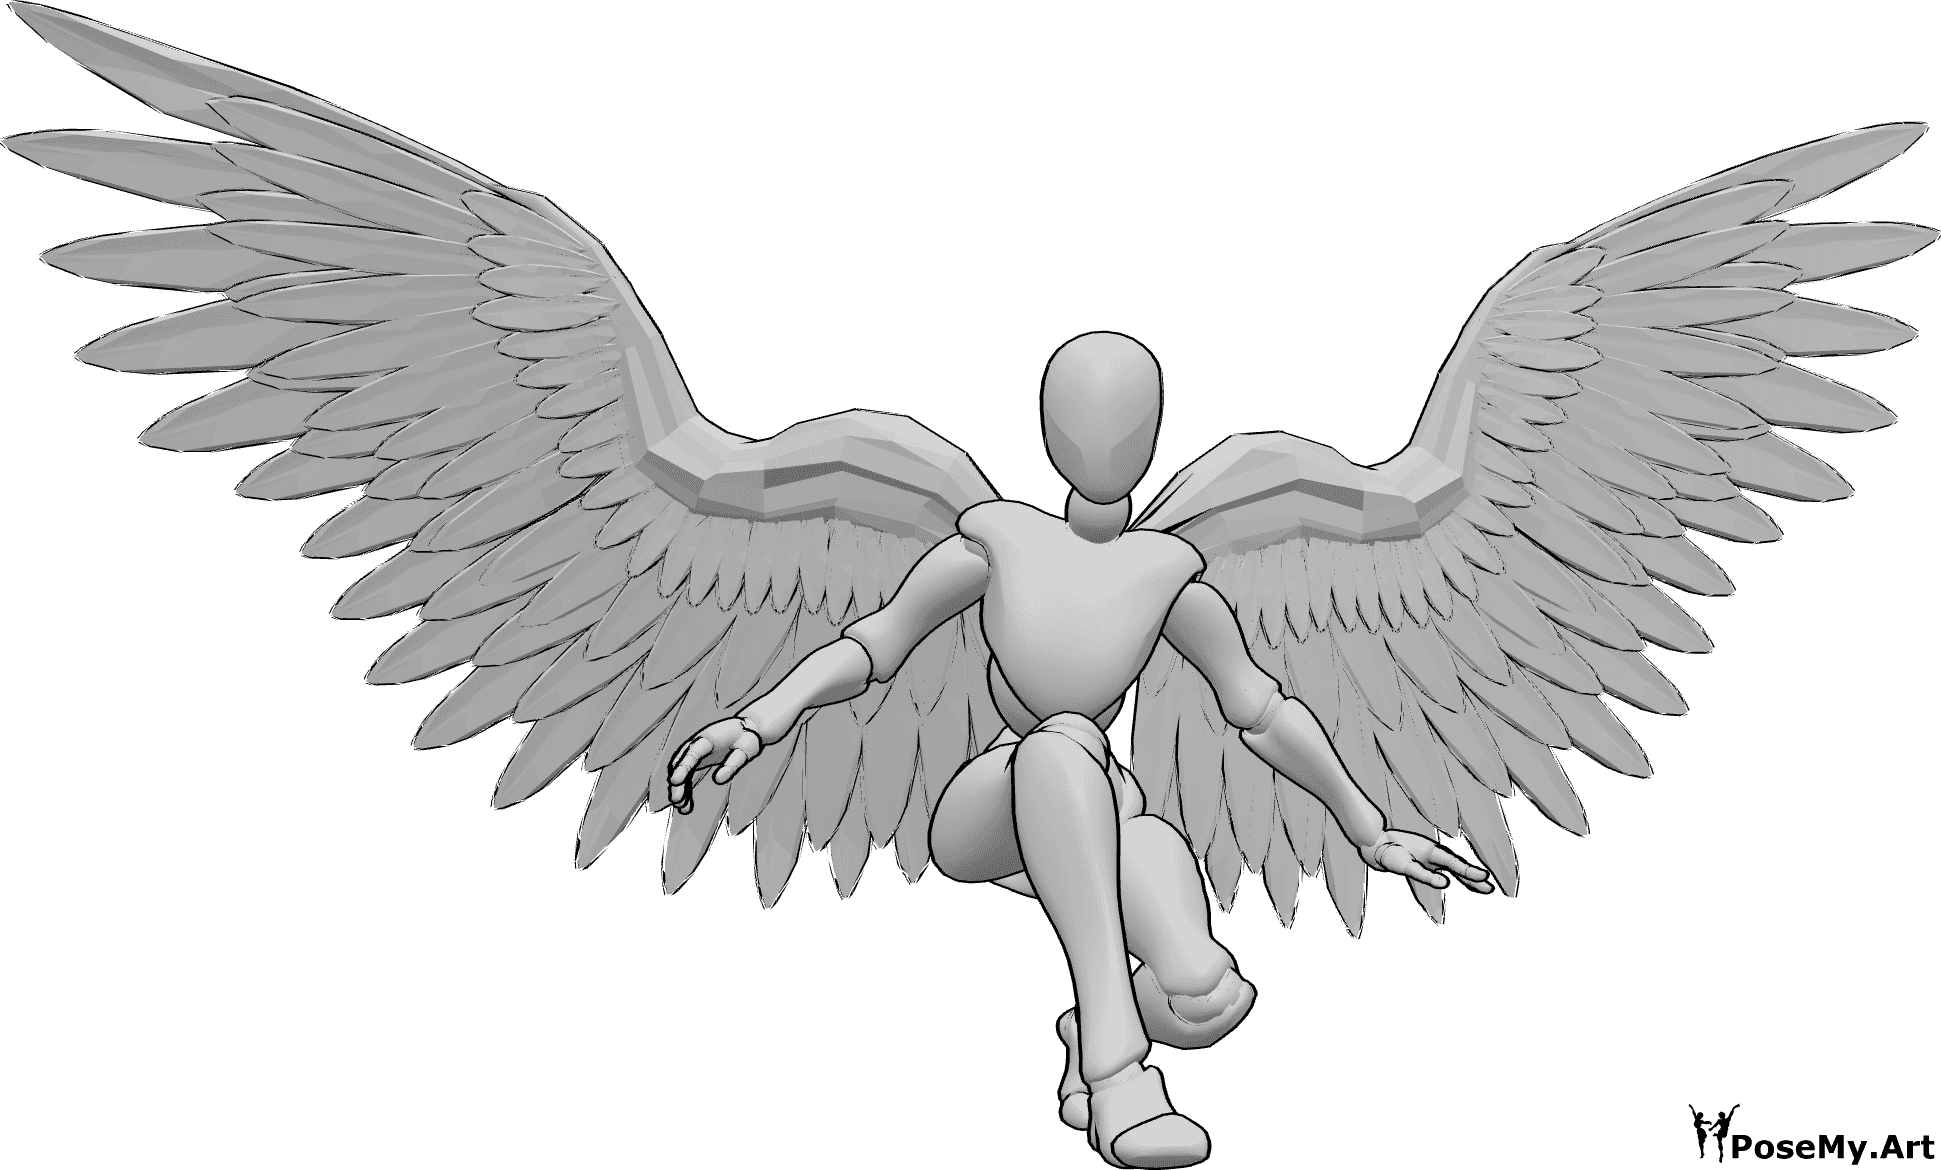 Riferimento alle pose- Posa di atterraggio con ali d'angelo - Donna con ali d'angelo in fase di atterraggio, in equilibrio con le mani e con lo sguardo rivolto in avanti